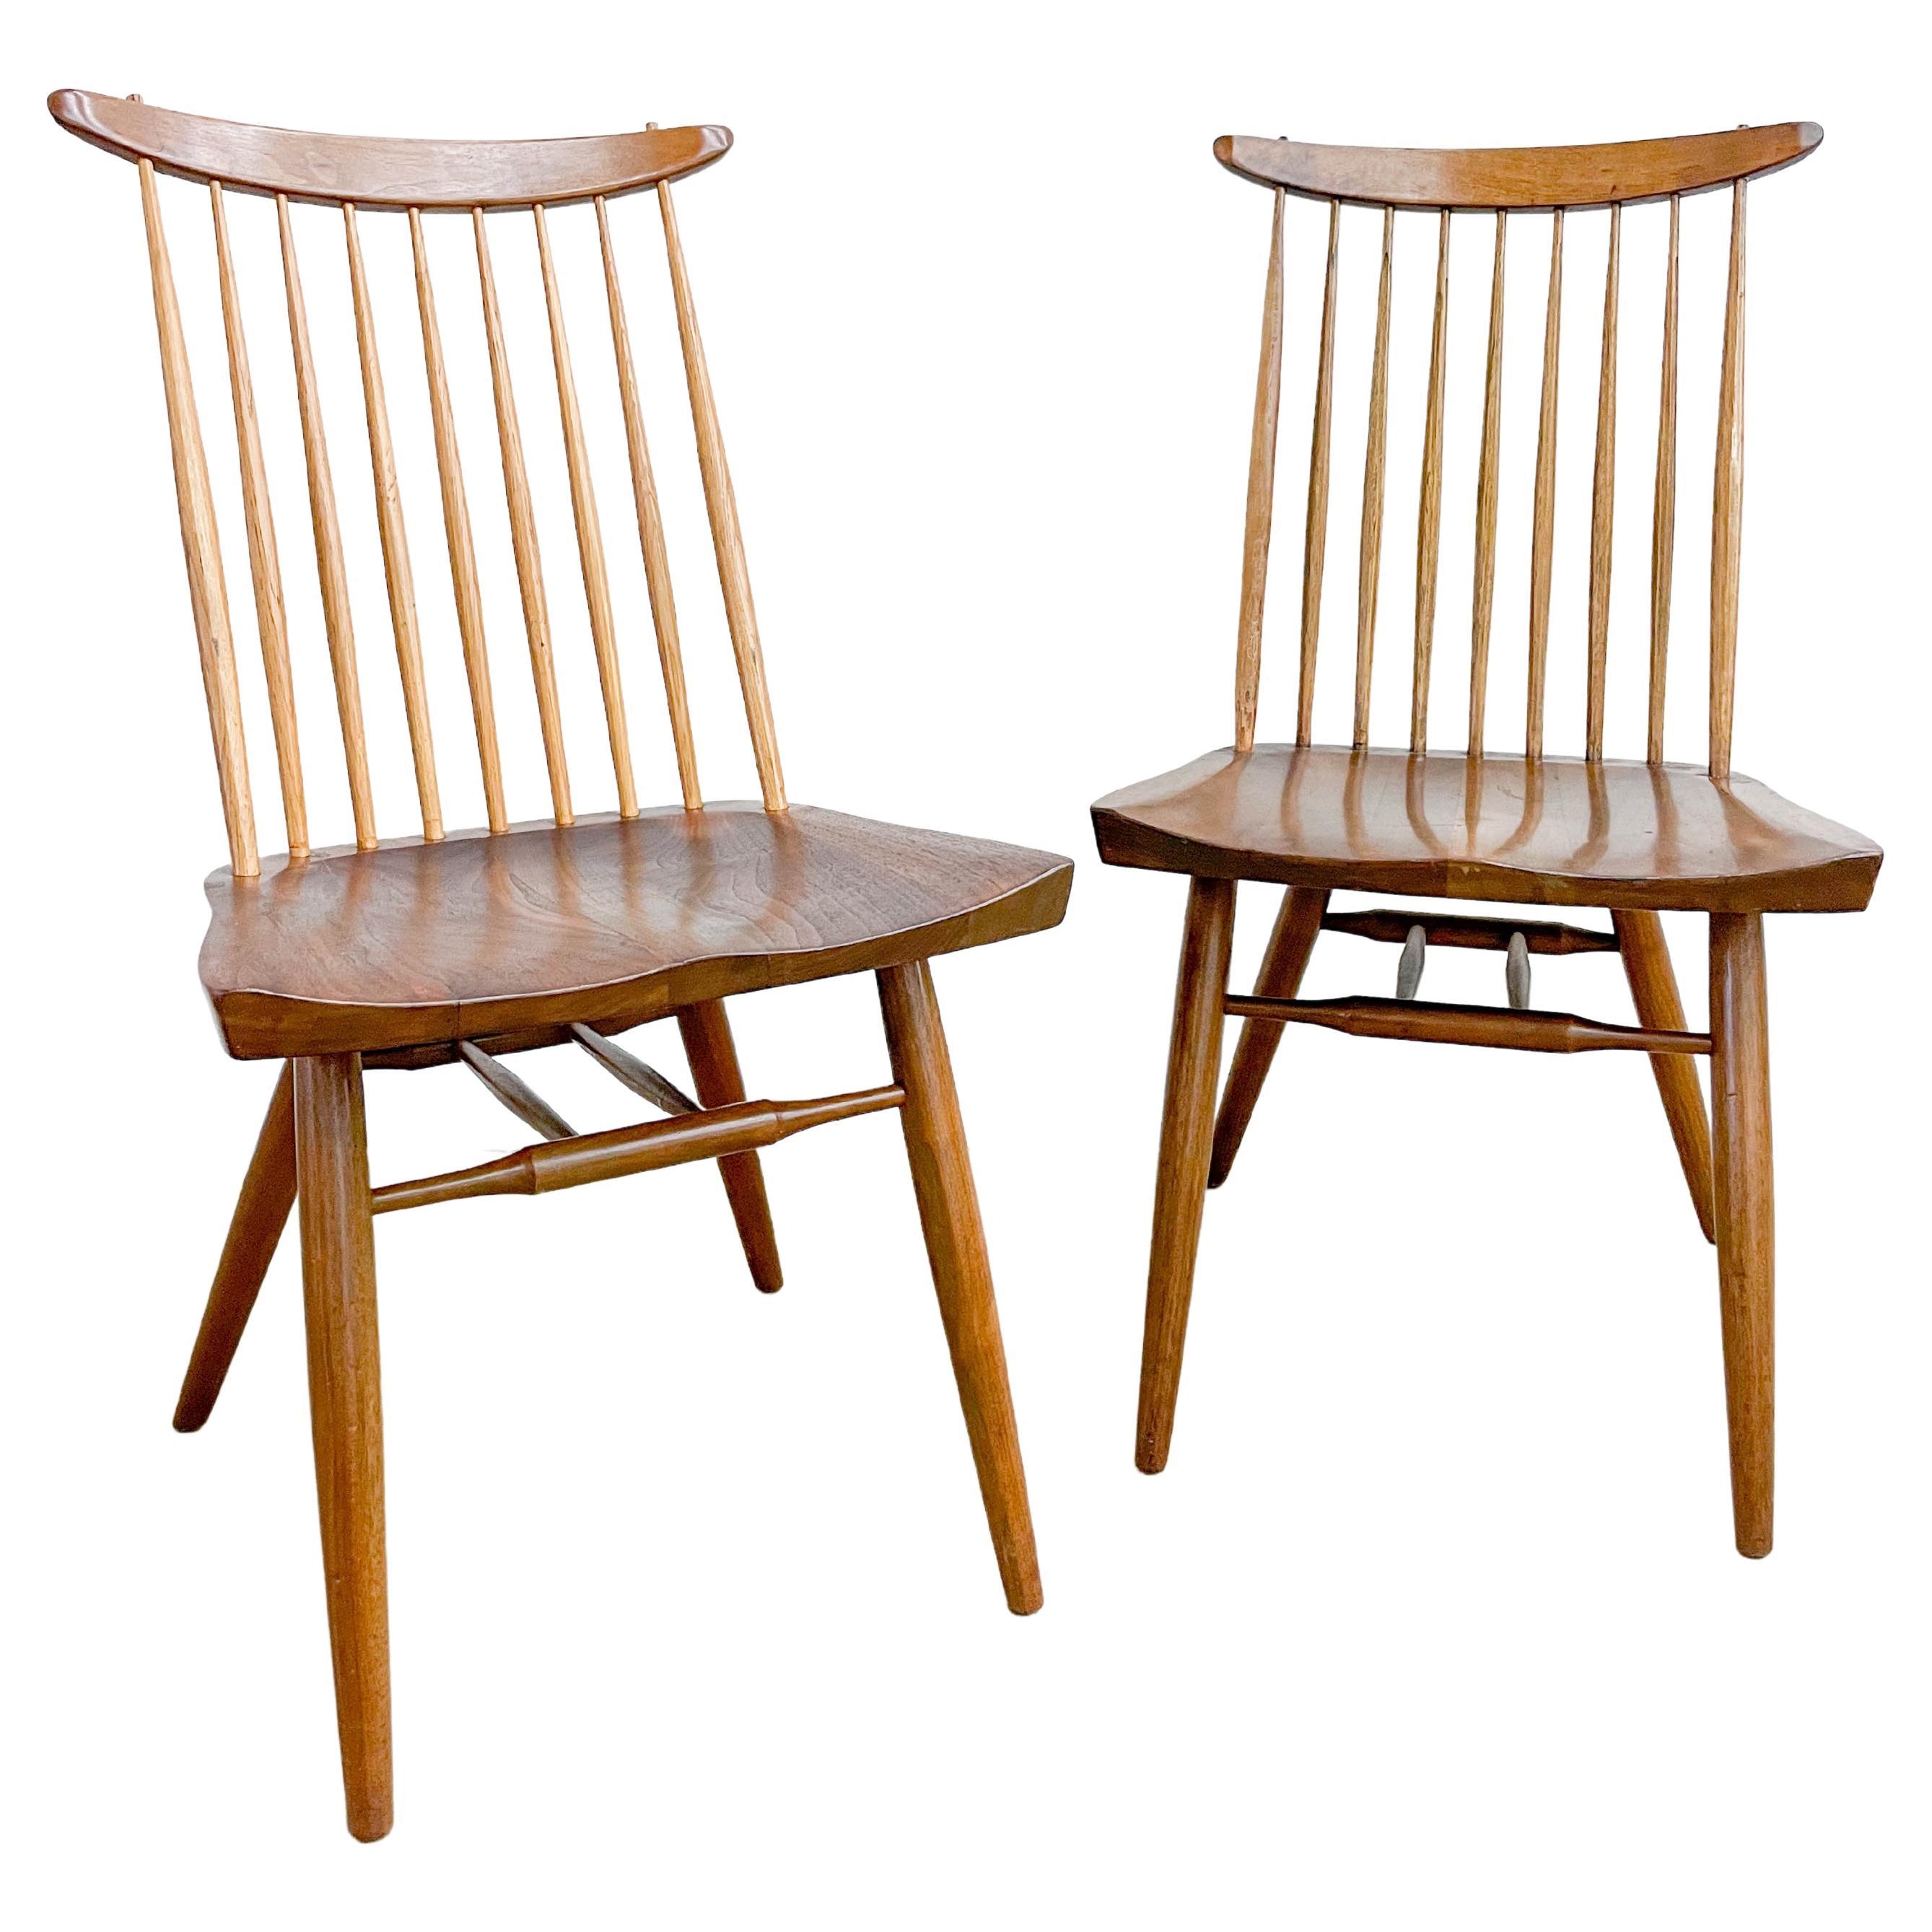 George Nakashima New Chairs